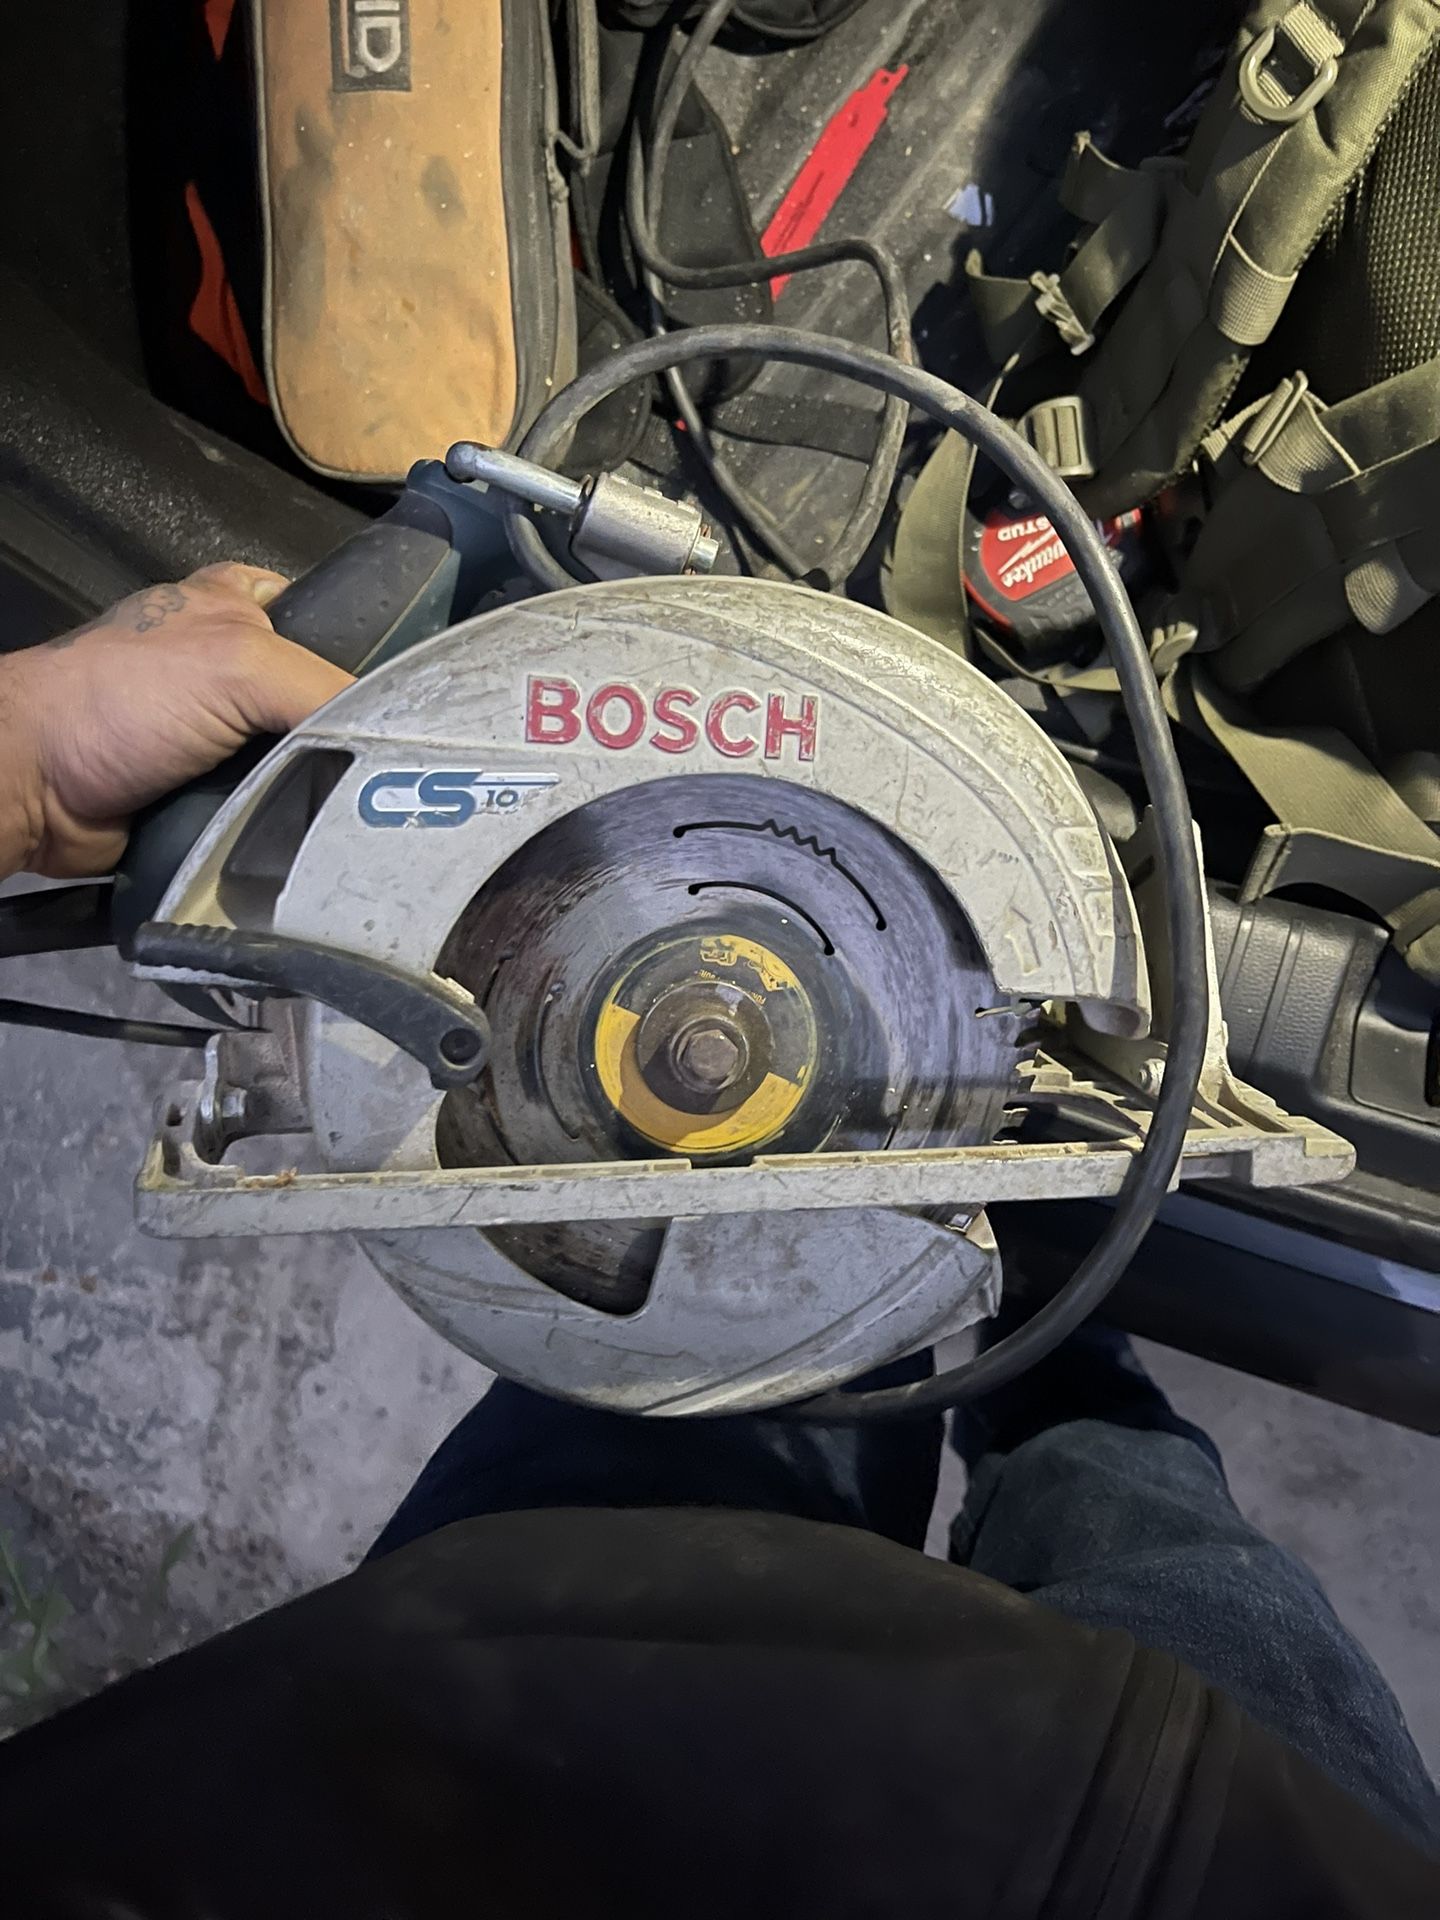 Bosch Skill Saw Tool